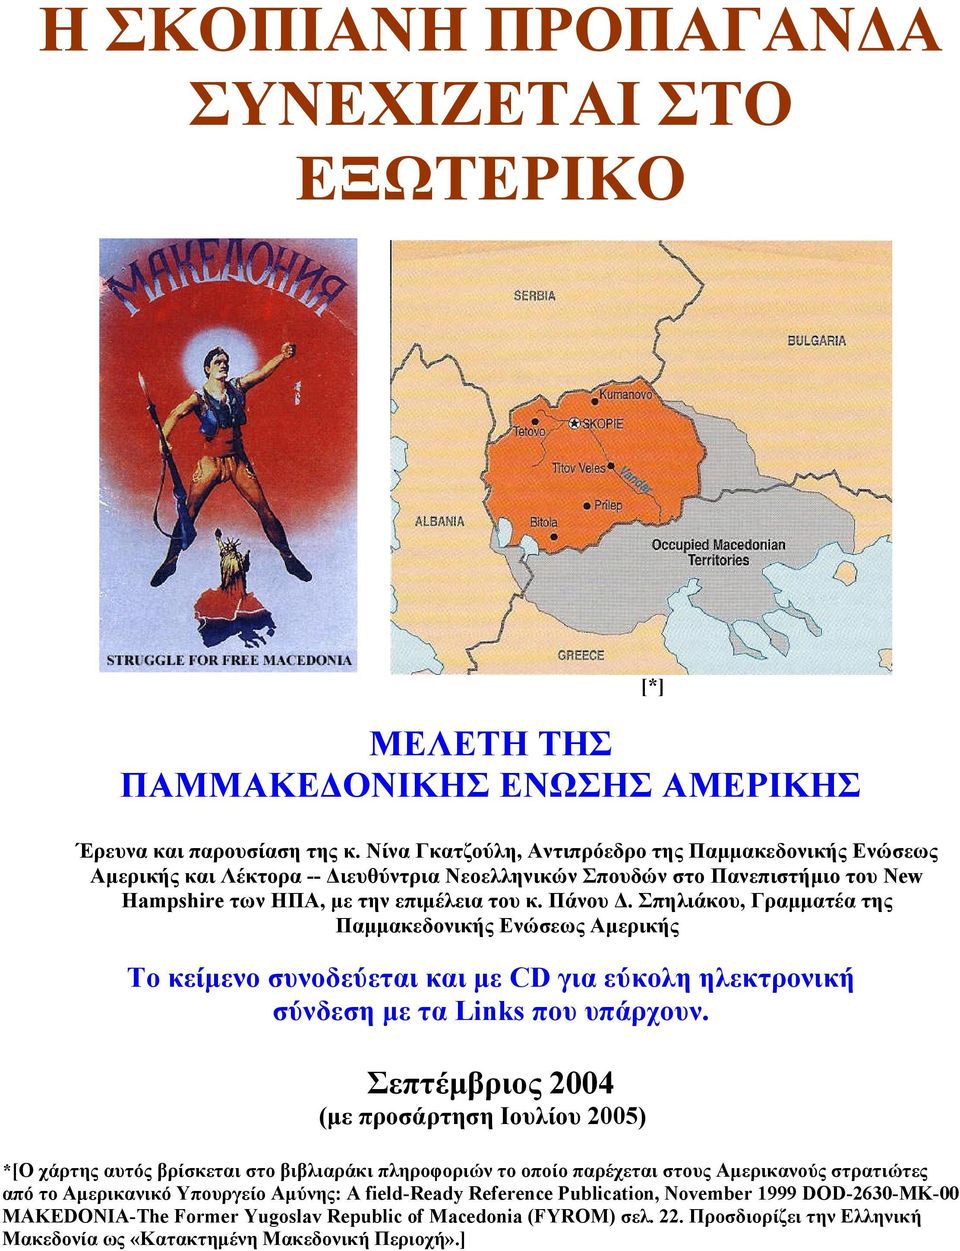 Σπηλιάκου, Γραμματέα της Παμμακεδονικής Ενώσεως Αμερικής Το κείμενο συνοδεύεται και με CD για εύκολη ηλεκτρονική σύνδεση με τα Links που υπάρχουν.